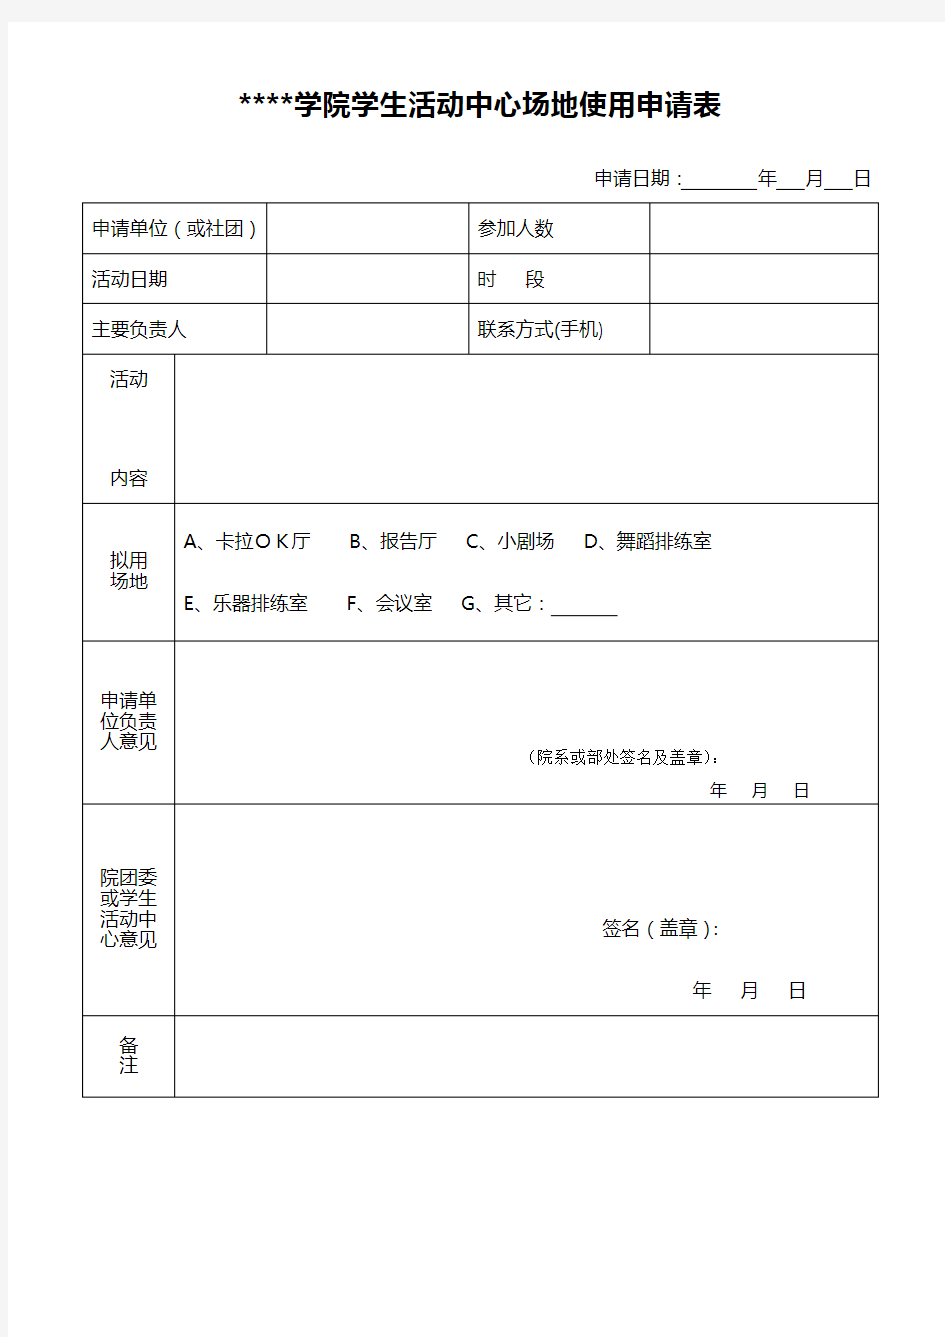 东莞理工学院学生活动中心场地使用申请表【模板】